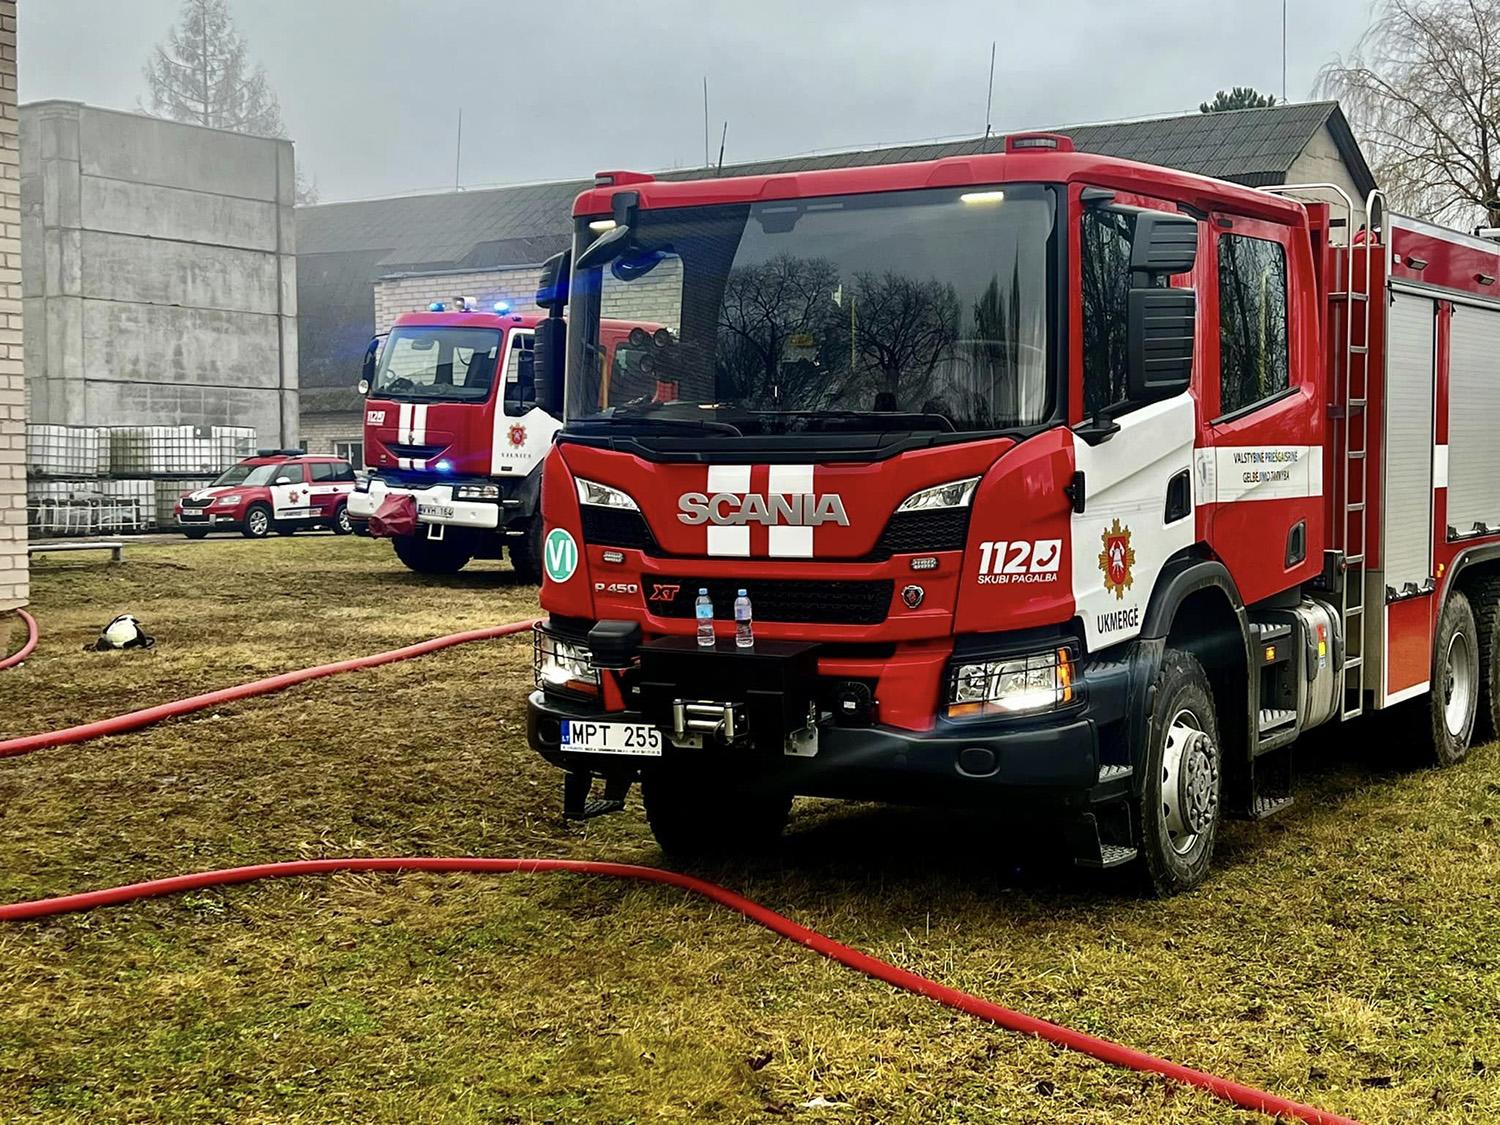 Iškvietimų į gaisrus ir nelaimes sumažėjo / Ukmergės PGT nuotr. Į įvykio vietą atskubėjo priešgaisrinės gelbėjimo tarnybos darbuotojai.